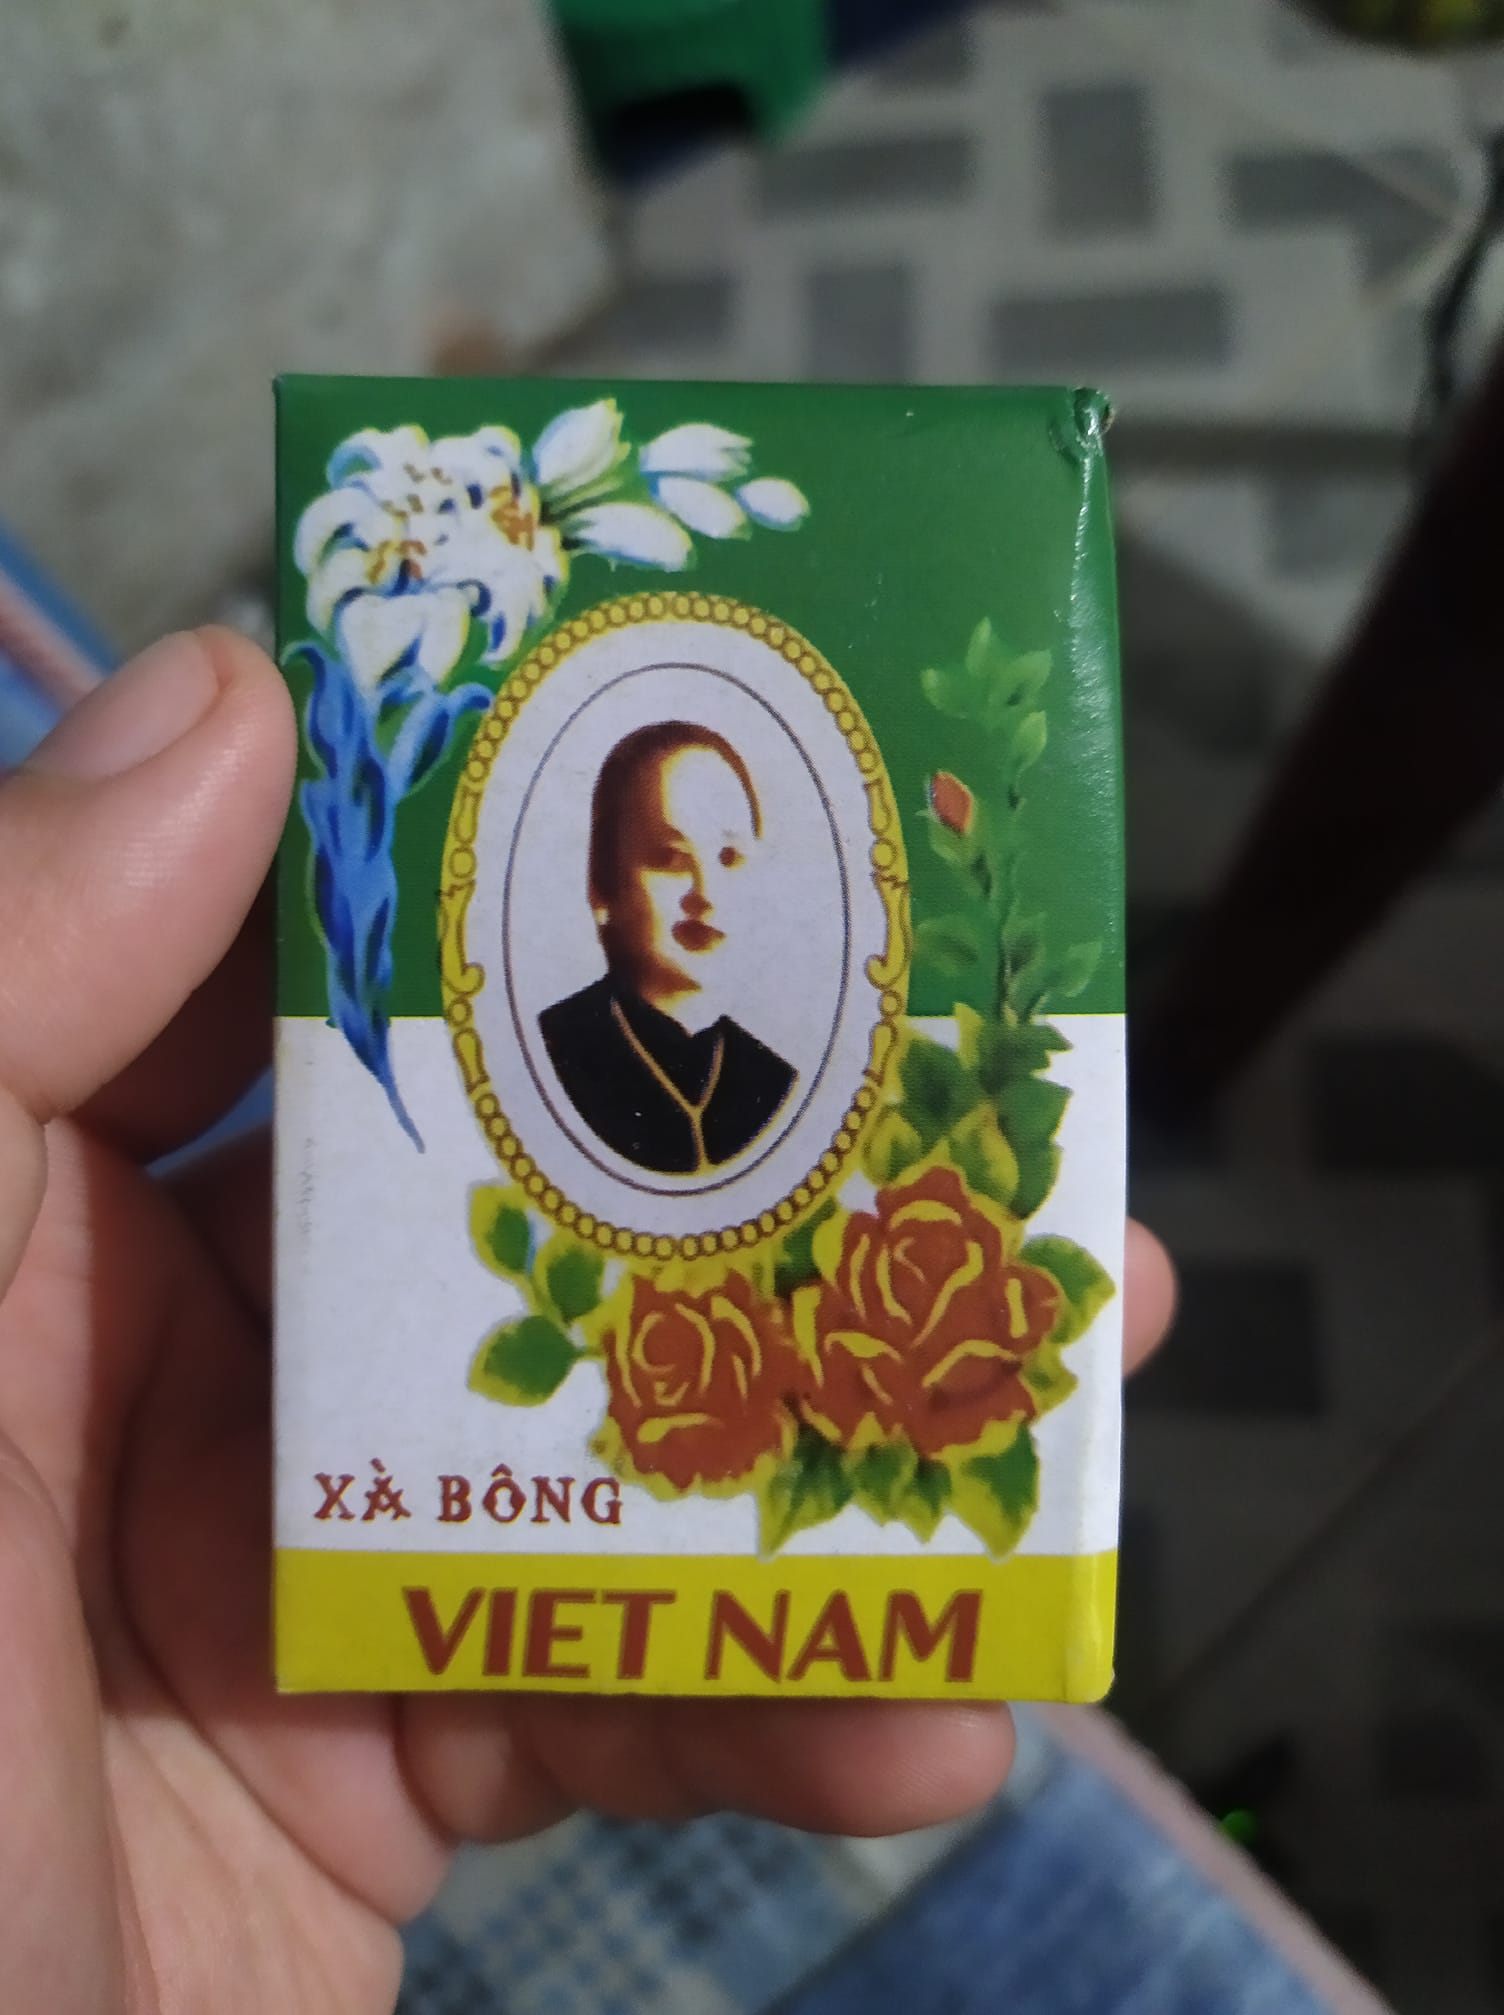  Những thương hiệu Việt vang bóng một thời lại được bán tấp nập - Ảnh 2.